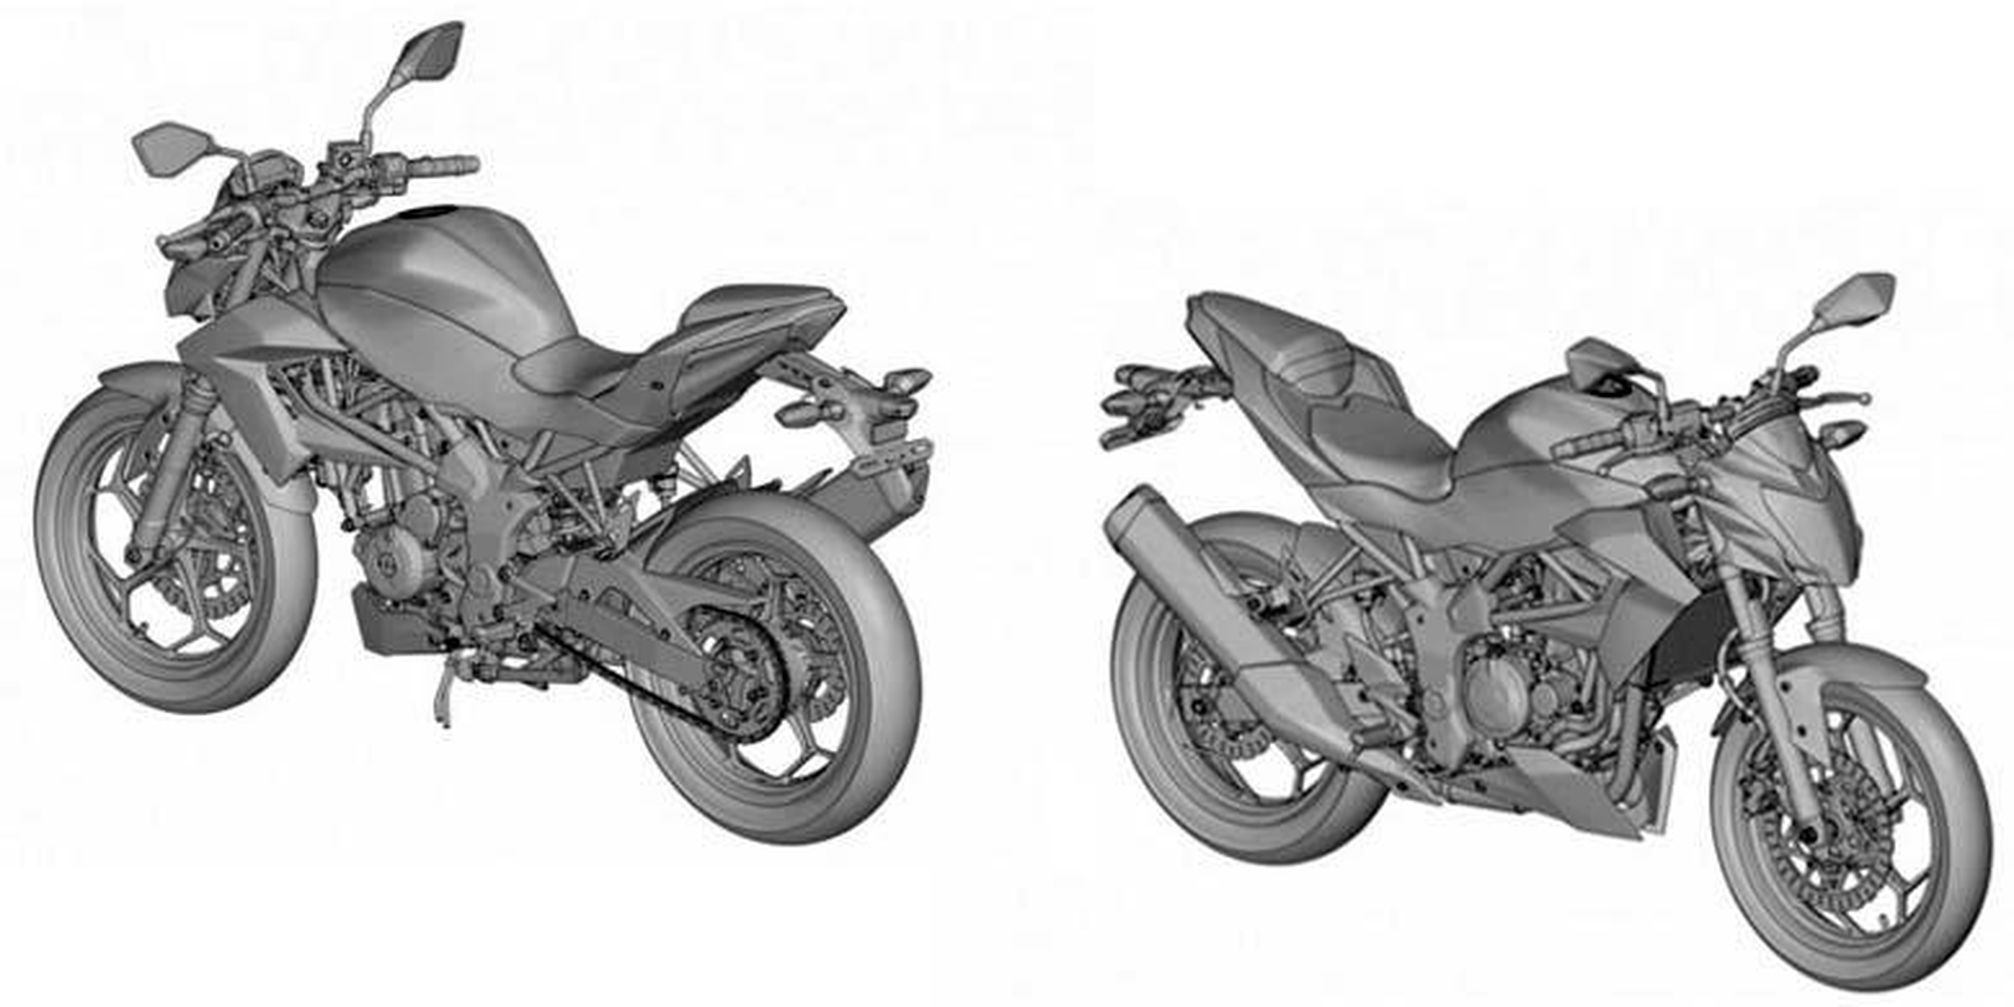 20 Koleski Terbaru Gambar Sketsa  Motor Kawasaki Ninja  Rr  